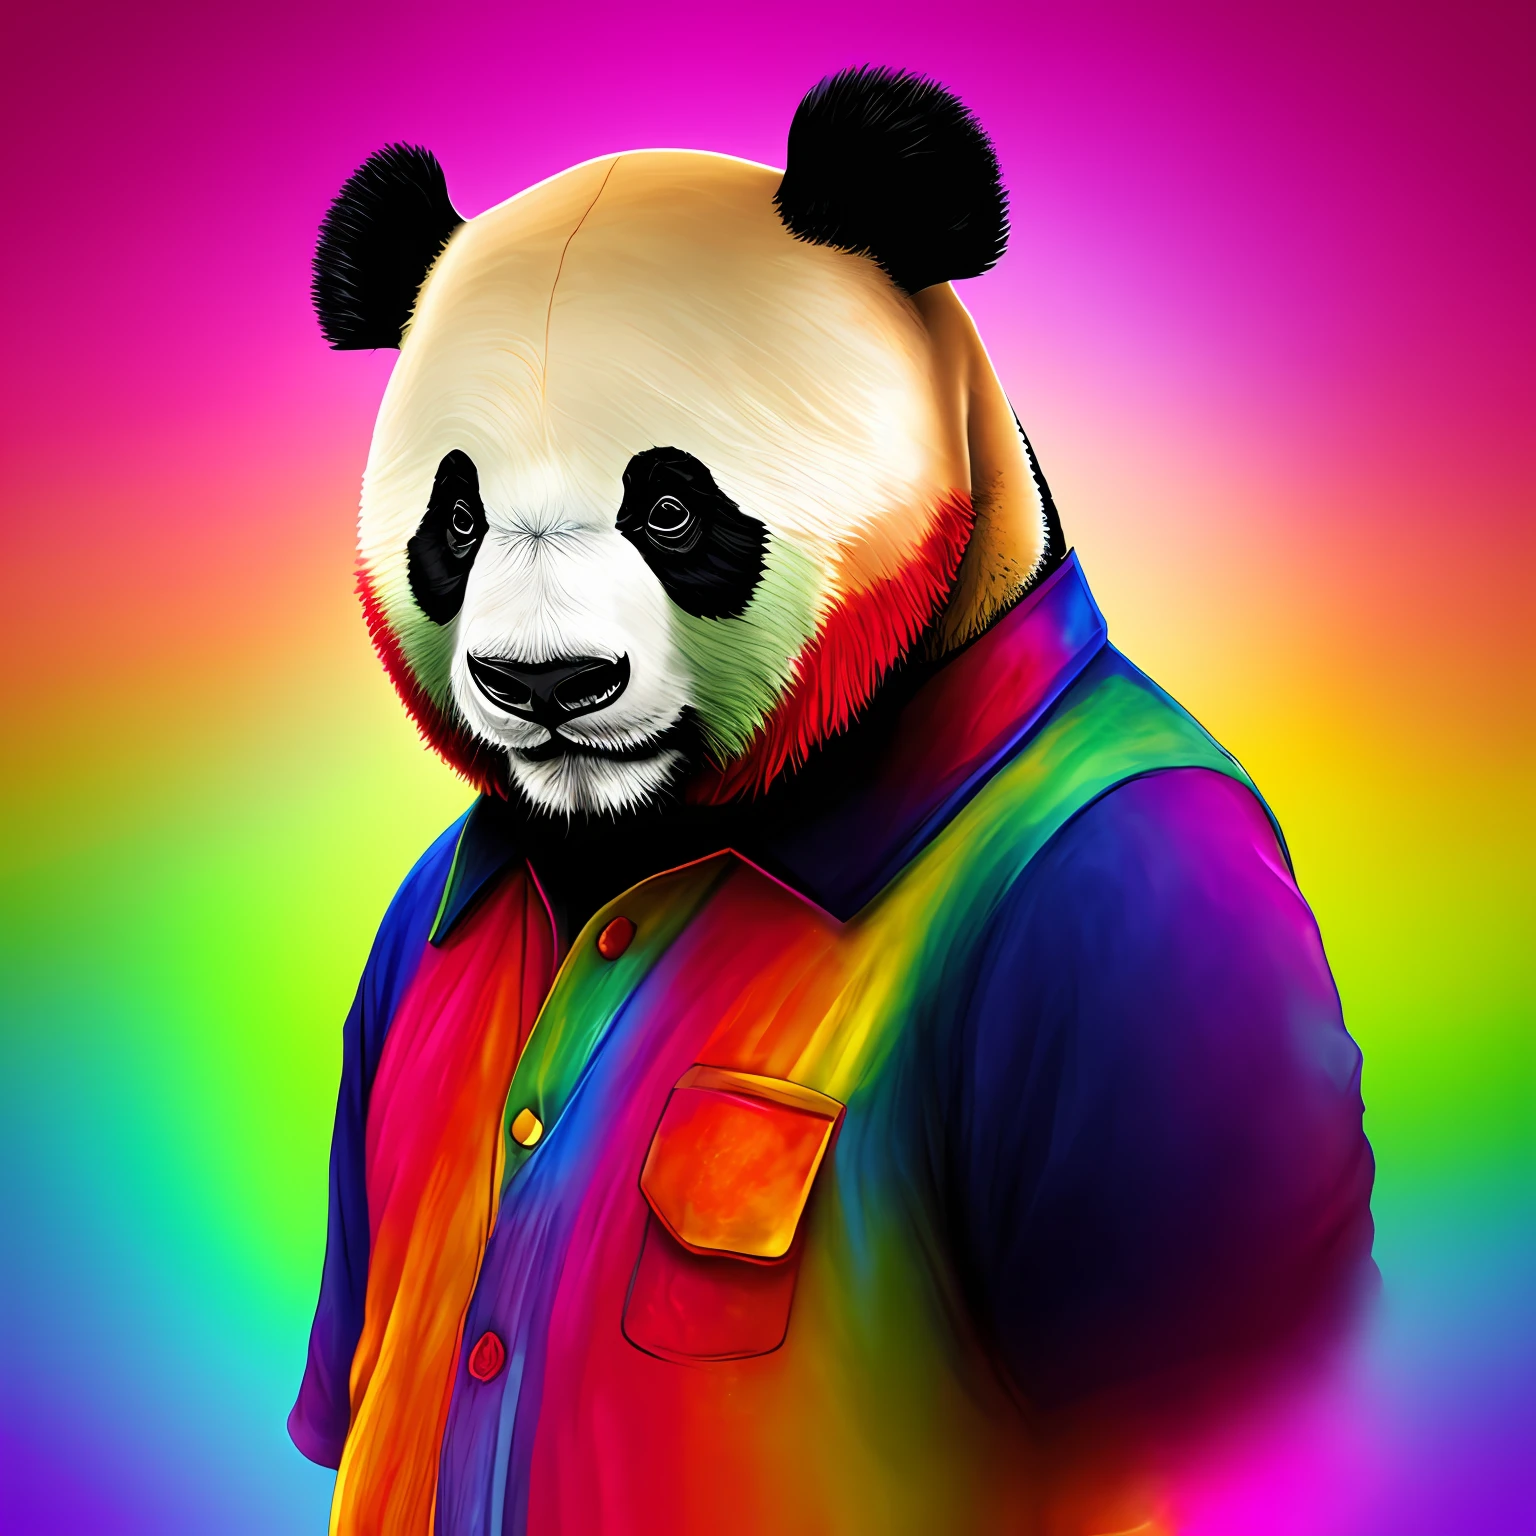 Персонификация панды, голова - большая панда, тело человеческое, красочная одежда --авто